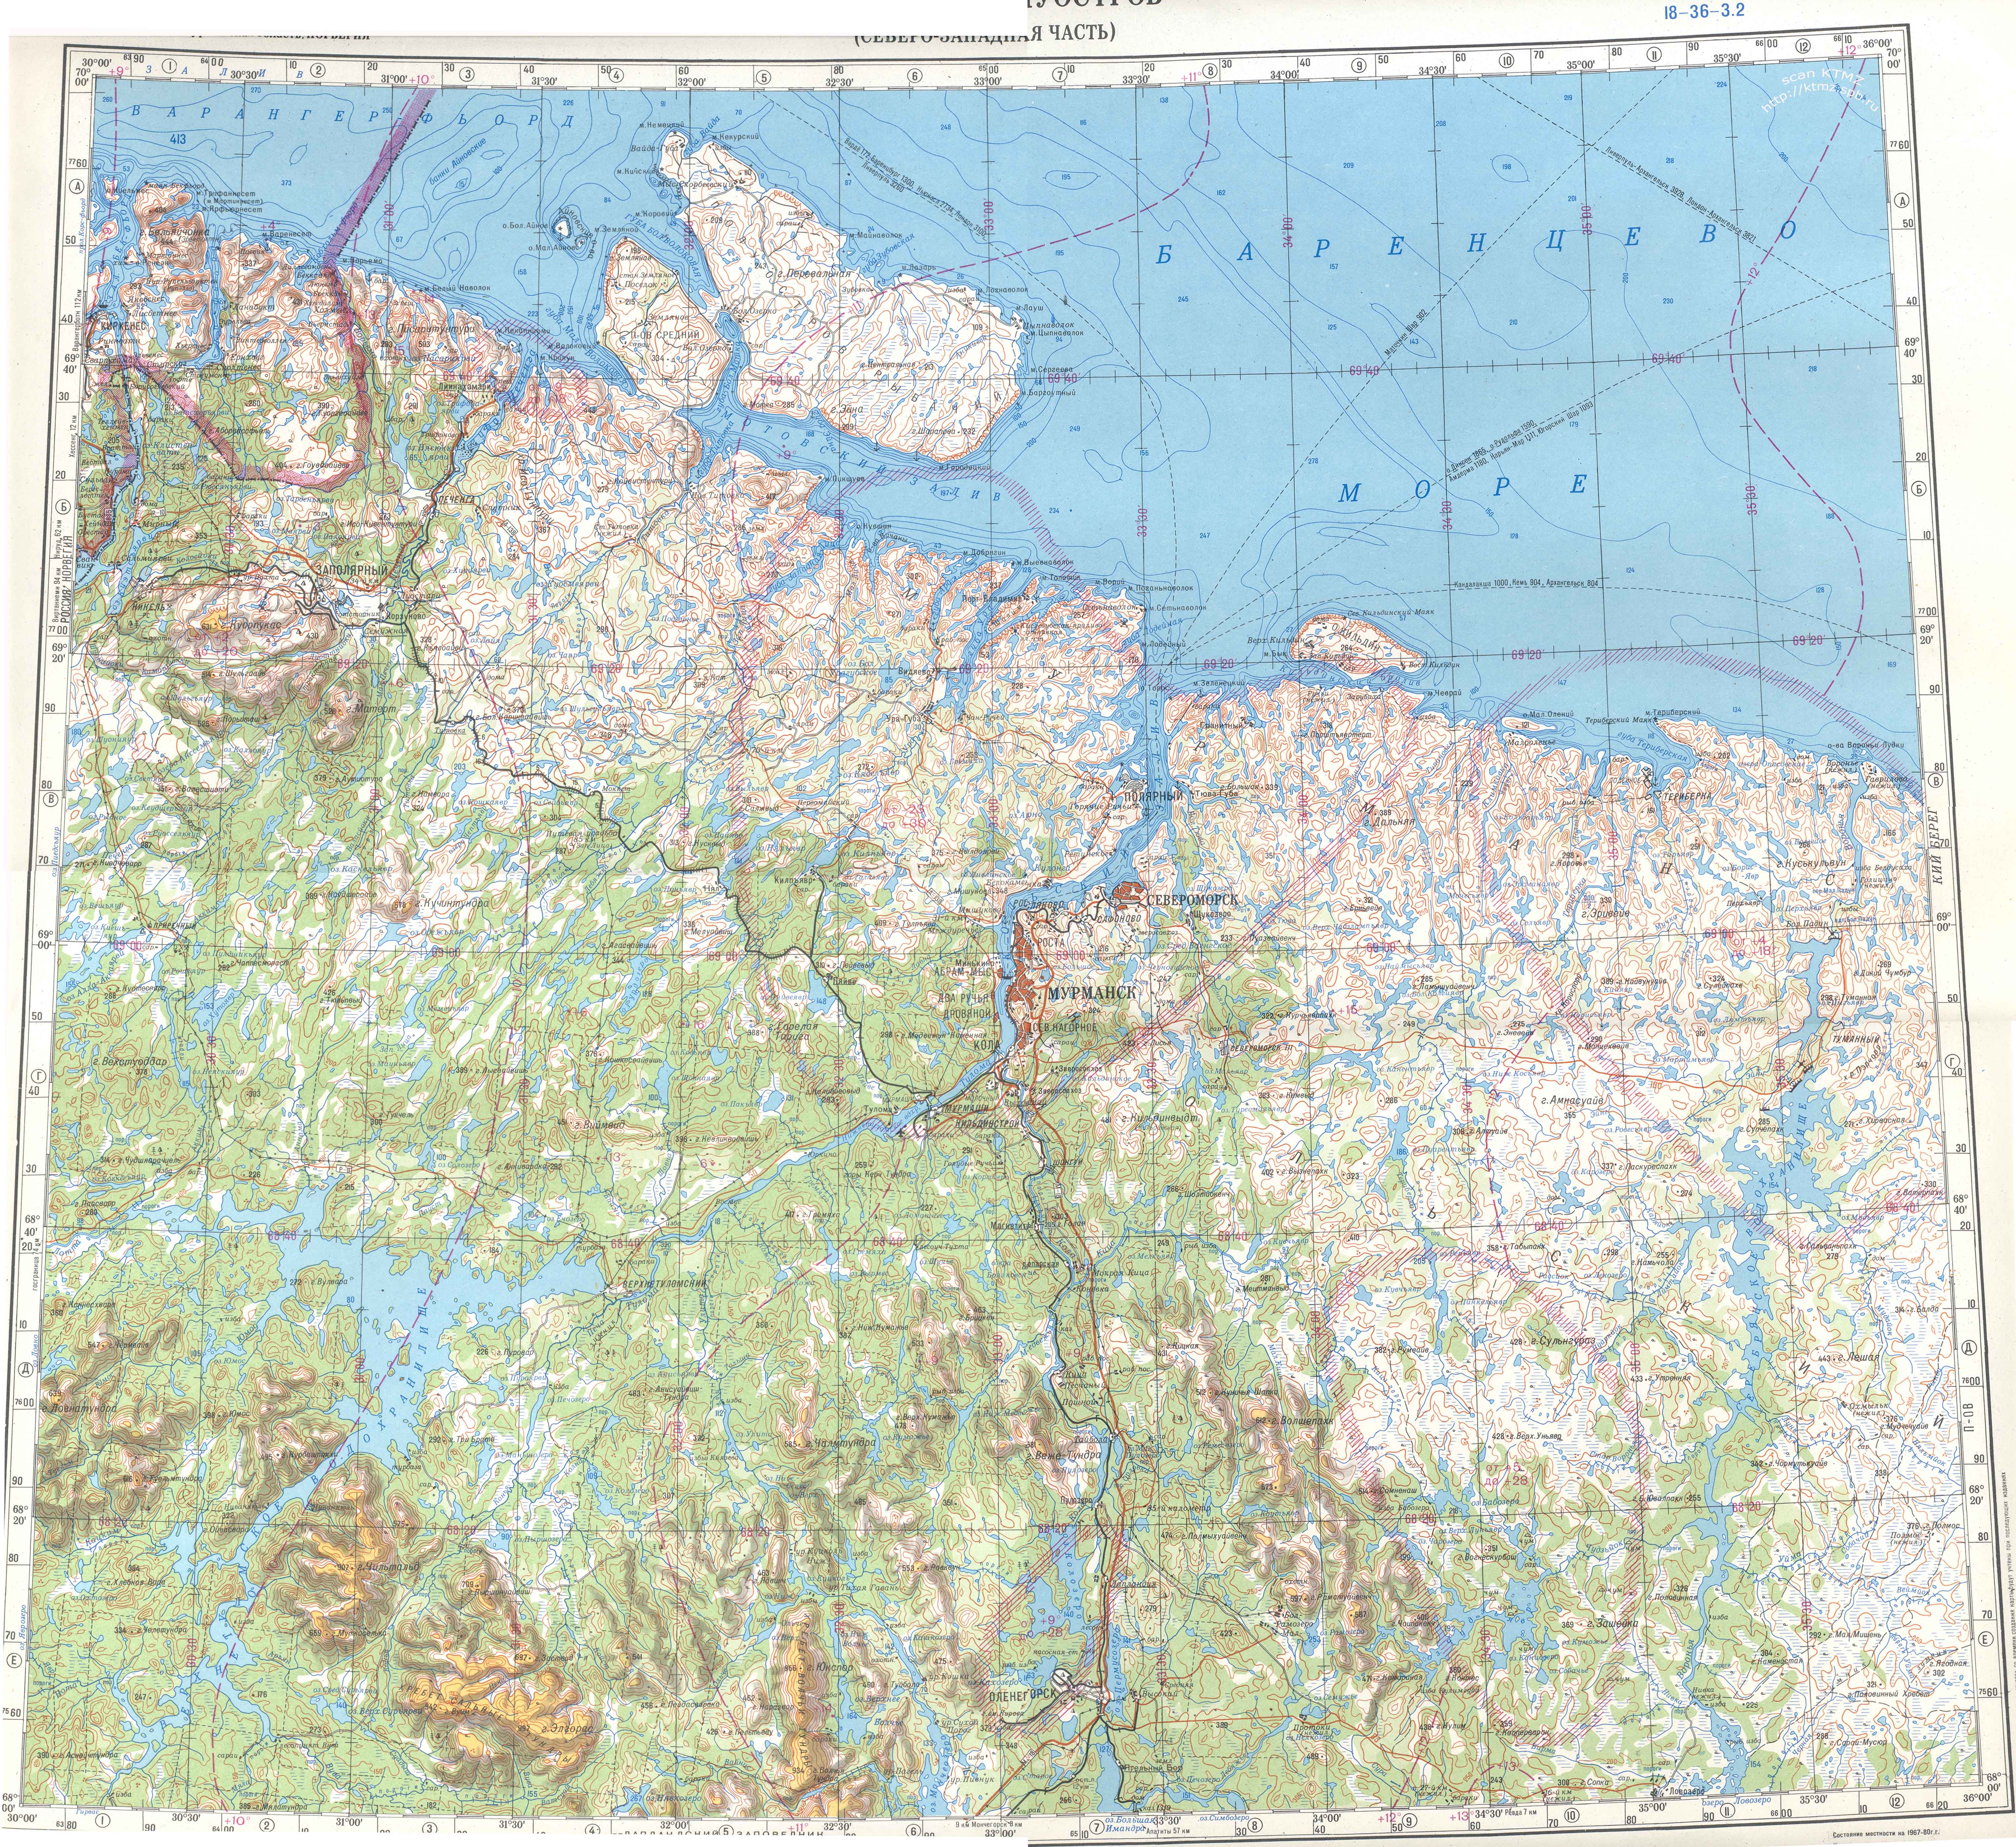 Северо-запад Кольского полуострова: Никель, Печенга, Североморск, Мурманск, Оленегорск. Обзорная карта